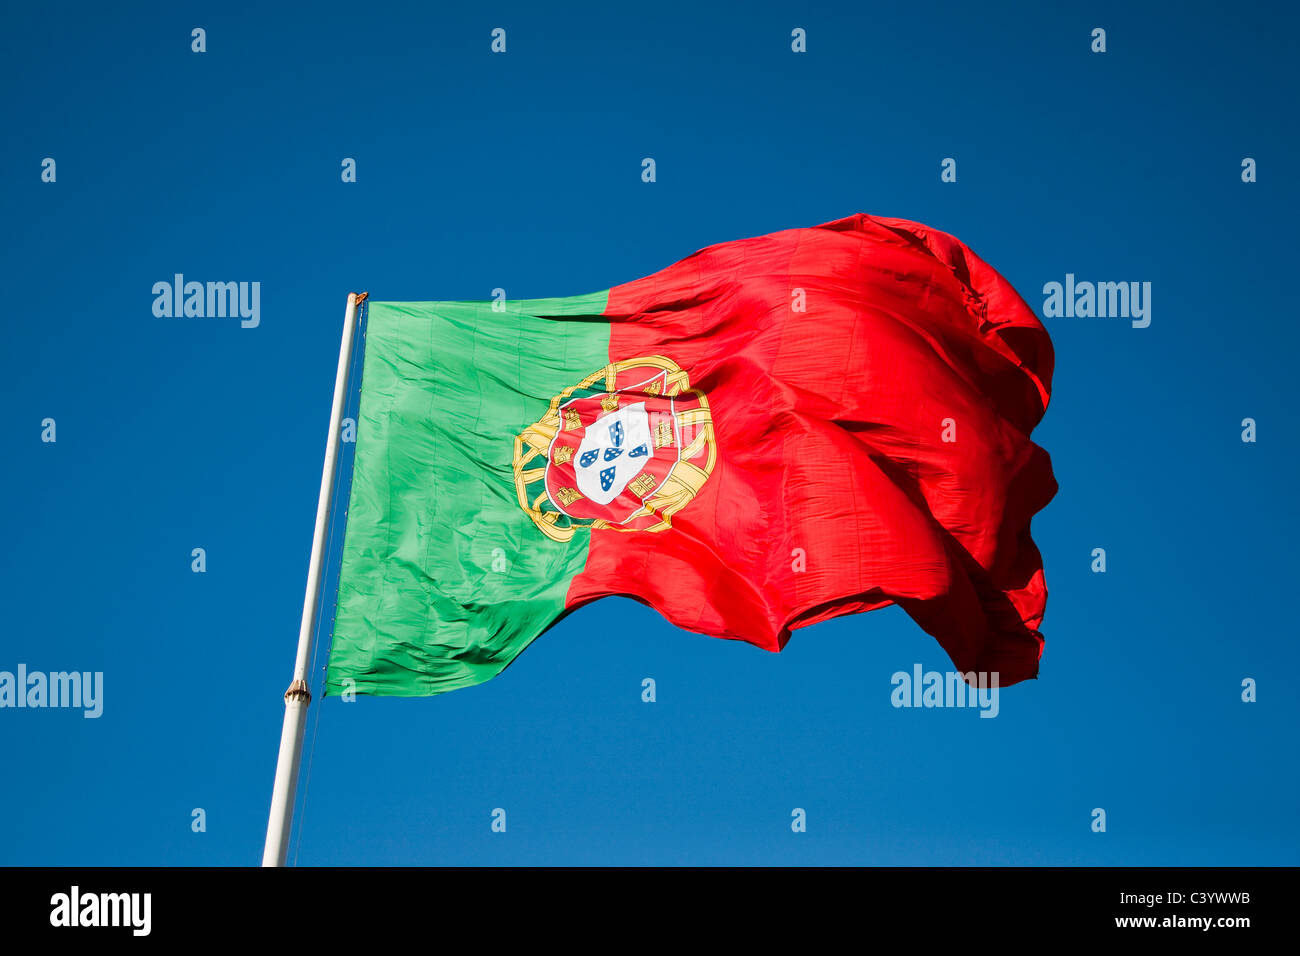 Le Portugal, l'Europe, drapeau, banderole, drapeau, vert, rouge Banque D'Images